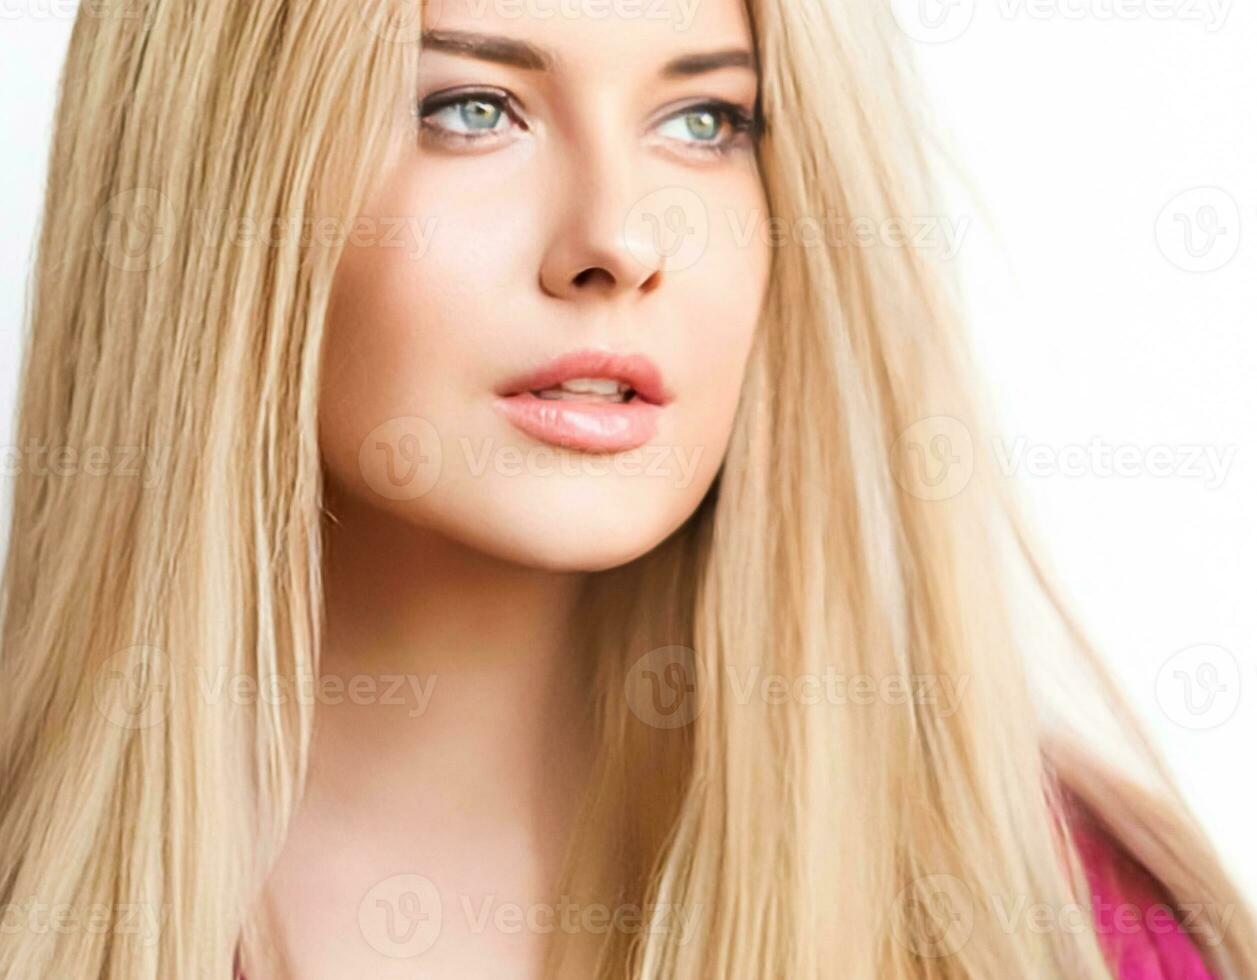 Frisur, Schönheit und Haar Pflege, schön blond Frau mit lange blond Haar, Glanz Porträt zum Haar Salon und Haarpflege foto